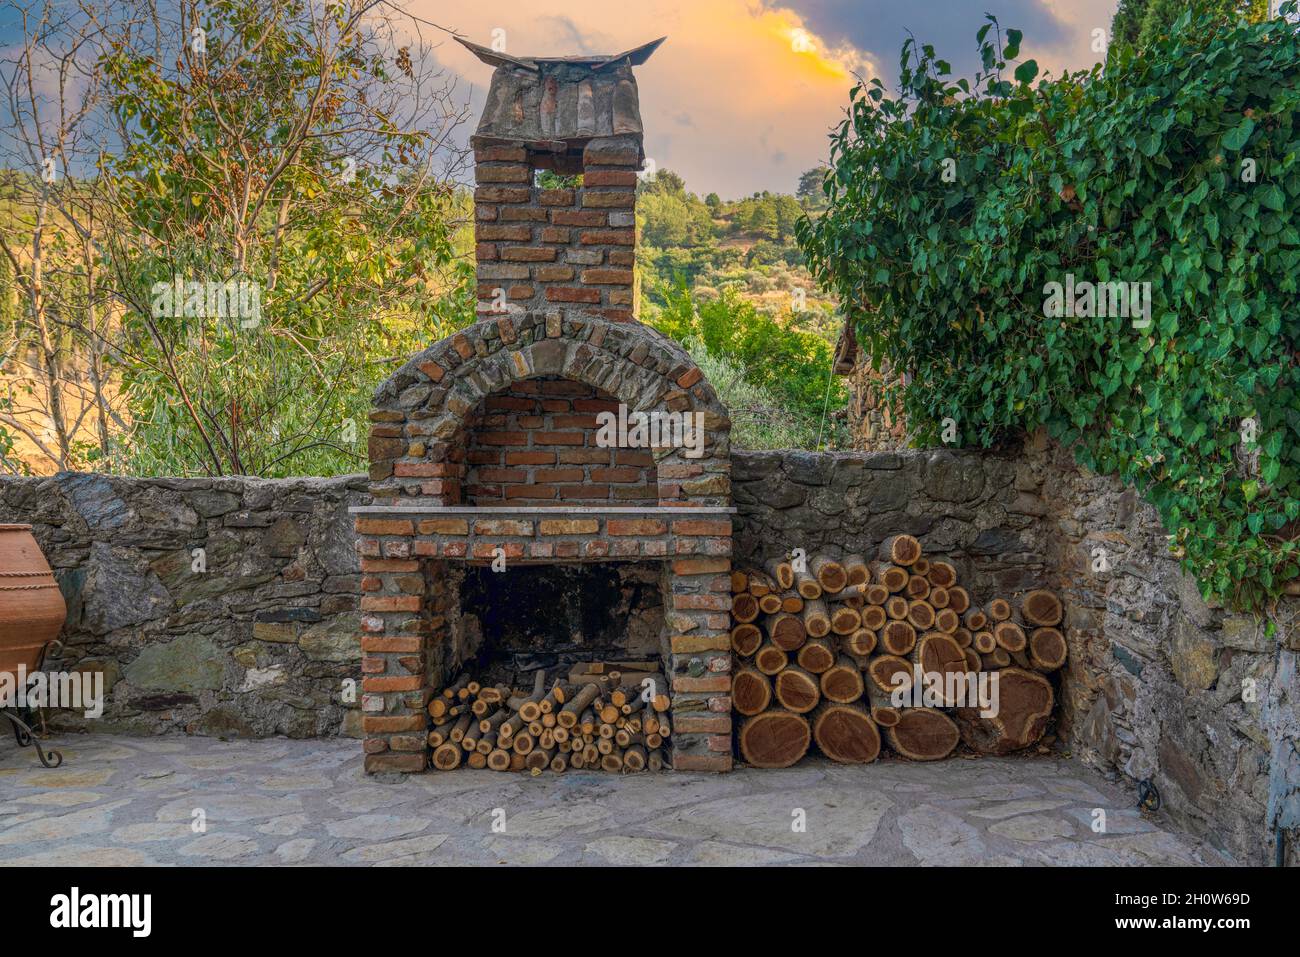 Kamin auf dem Hinterhof. Offene Sommer-Grillküche mit Grill und Holz. Stockfoto